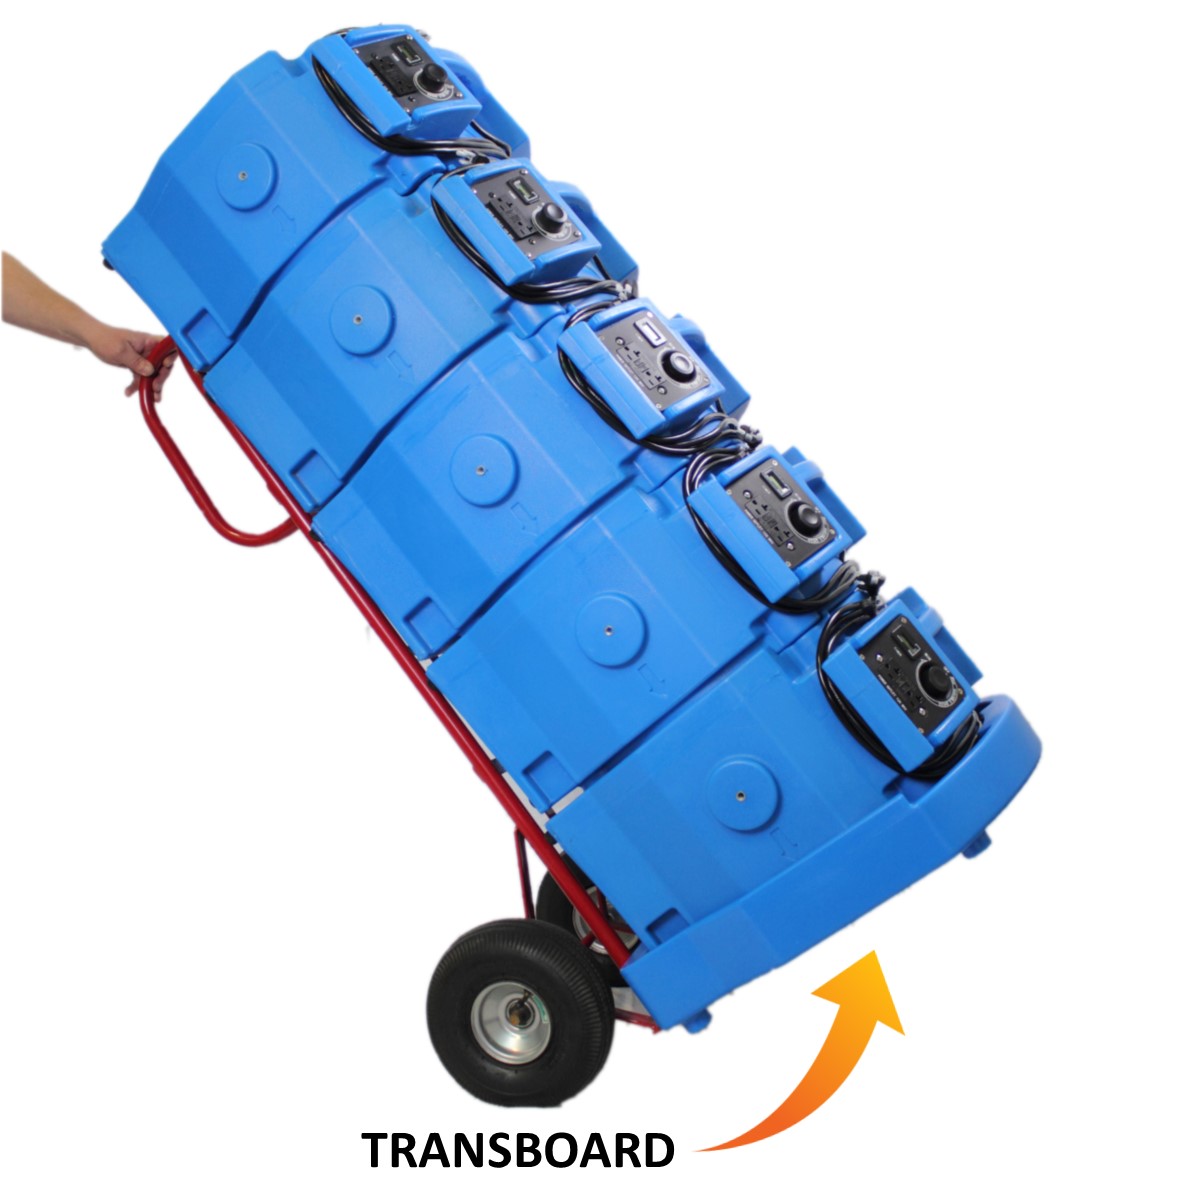 Transboard